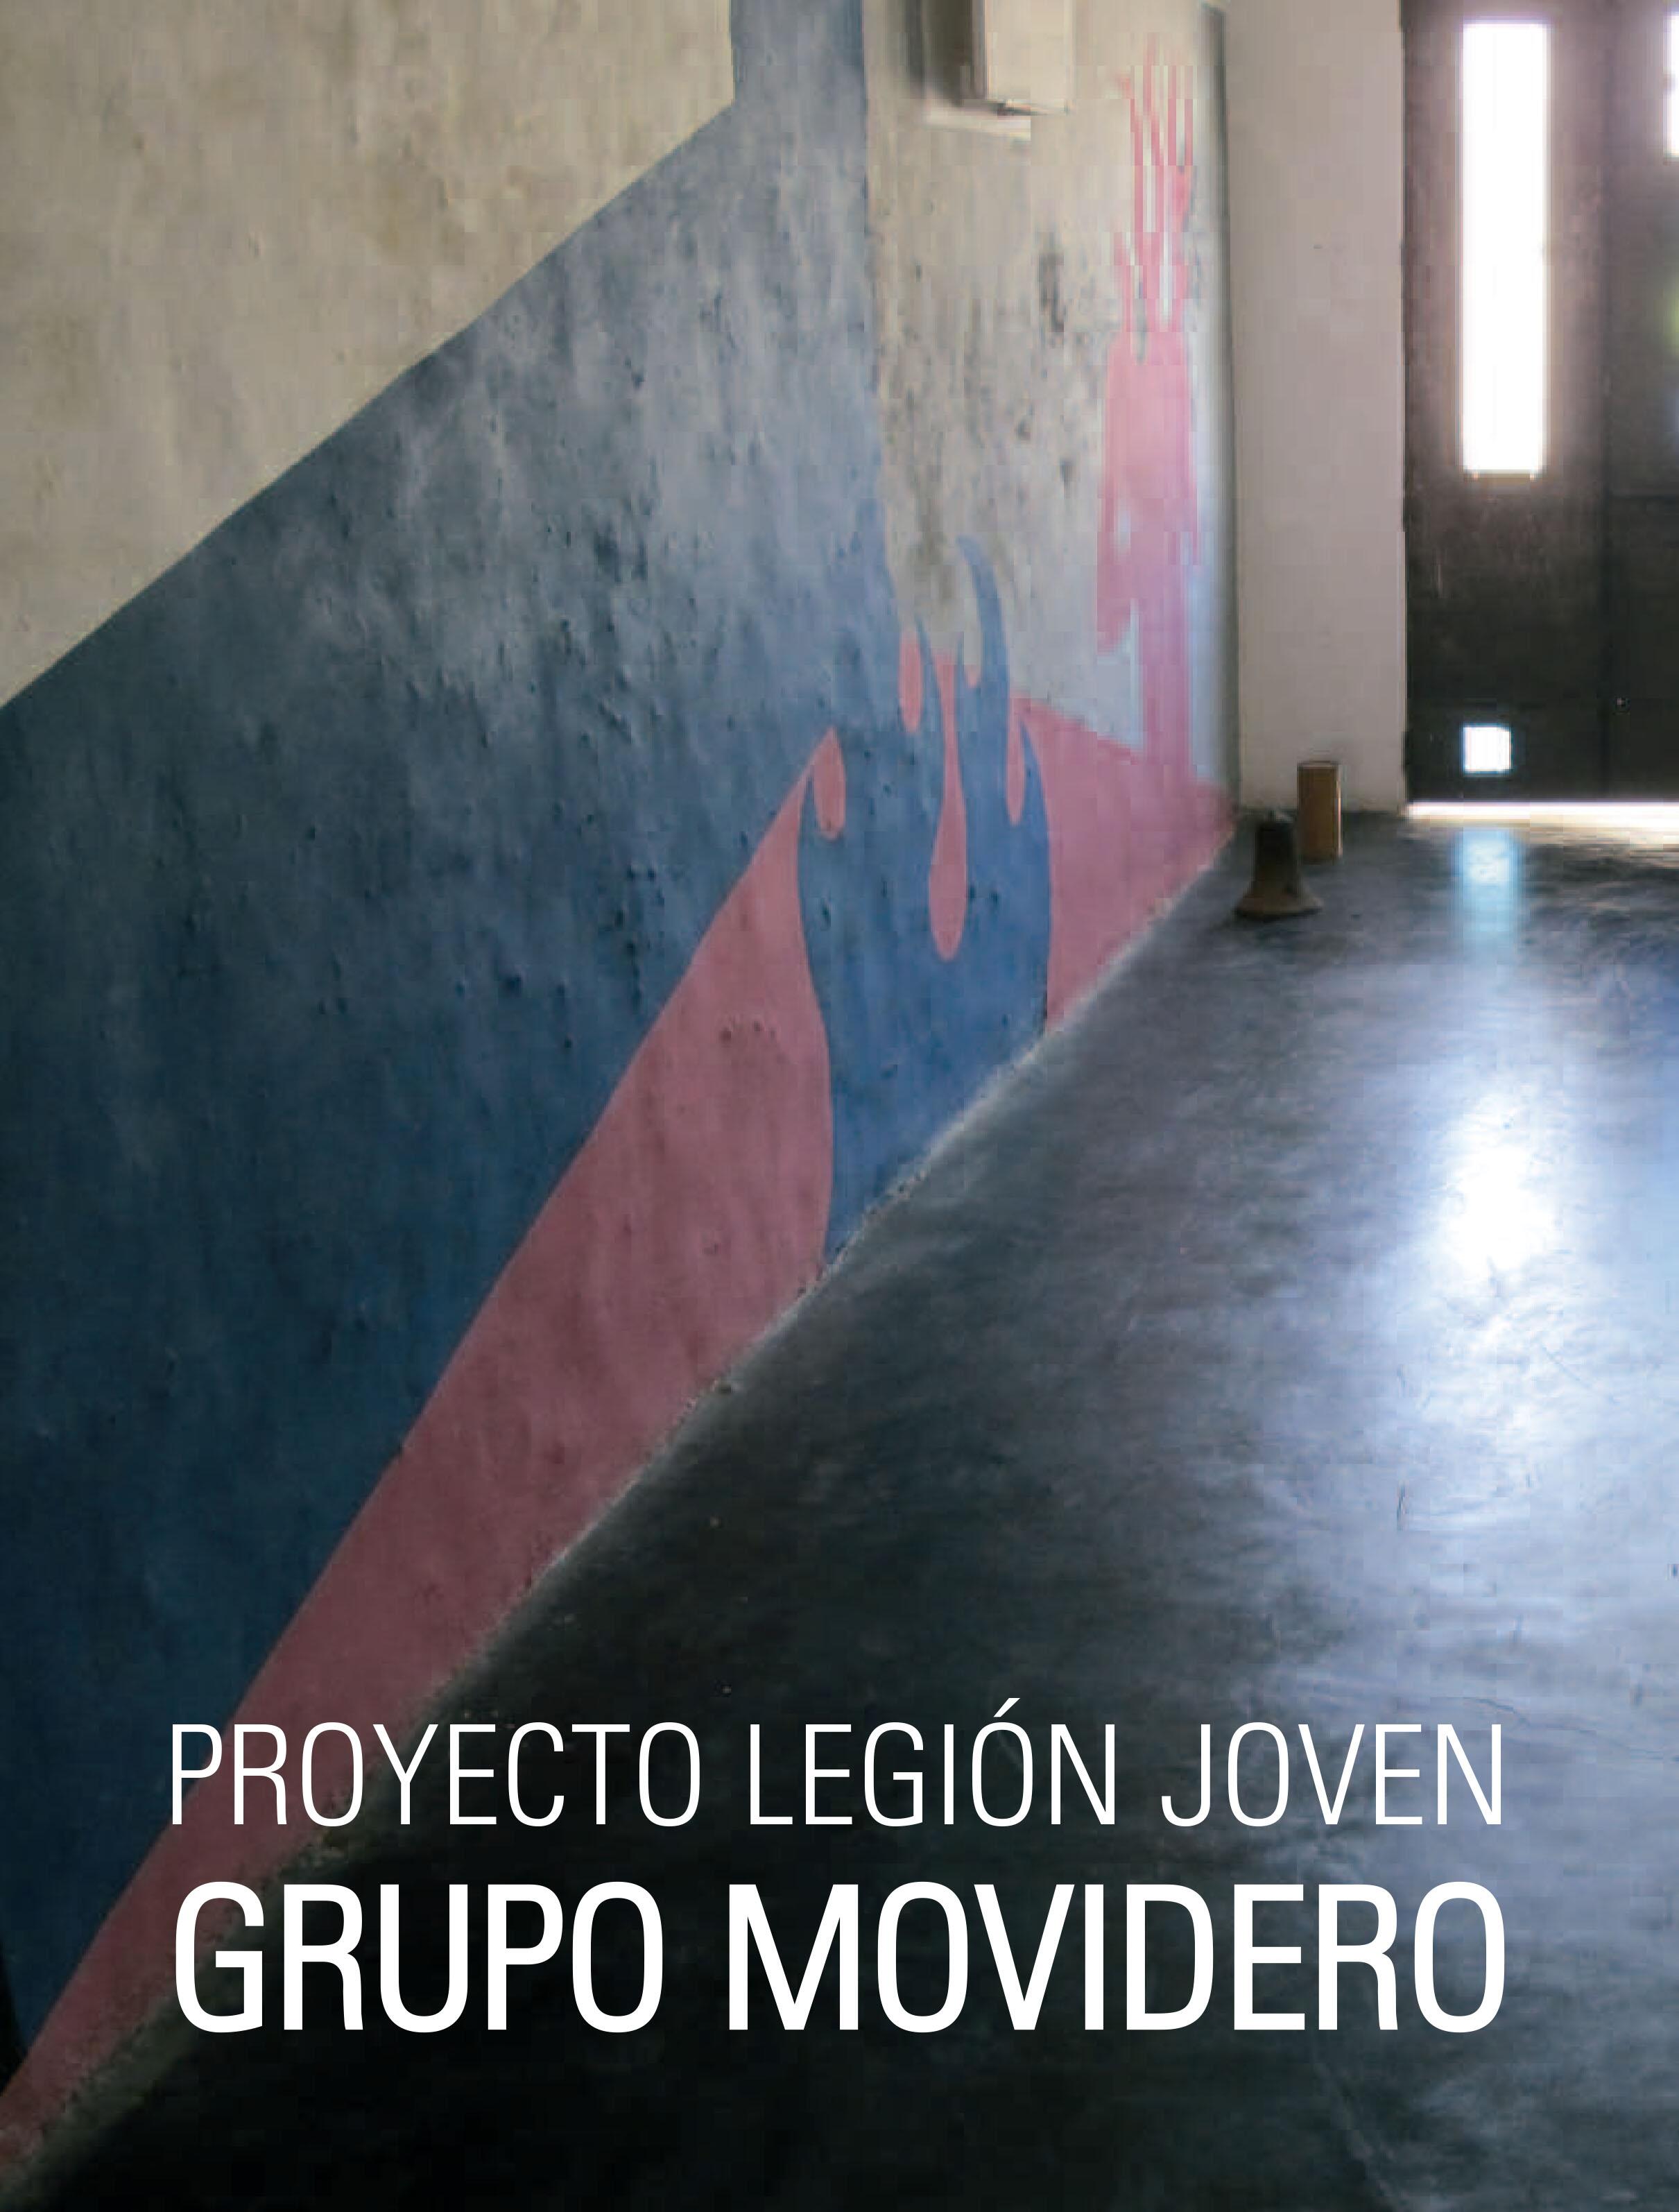 Proyecto Legión joven. Grupo Movidero